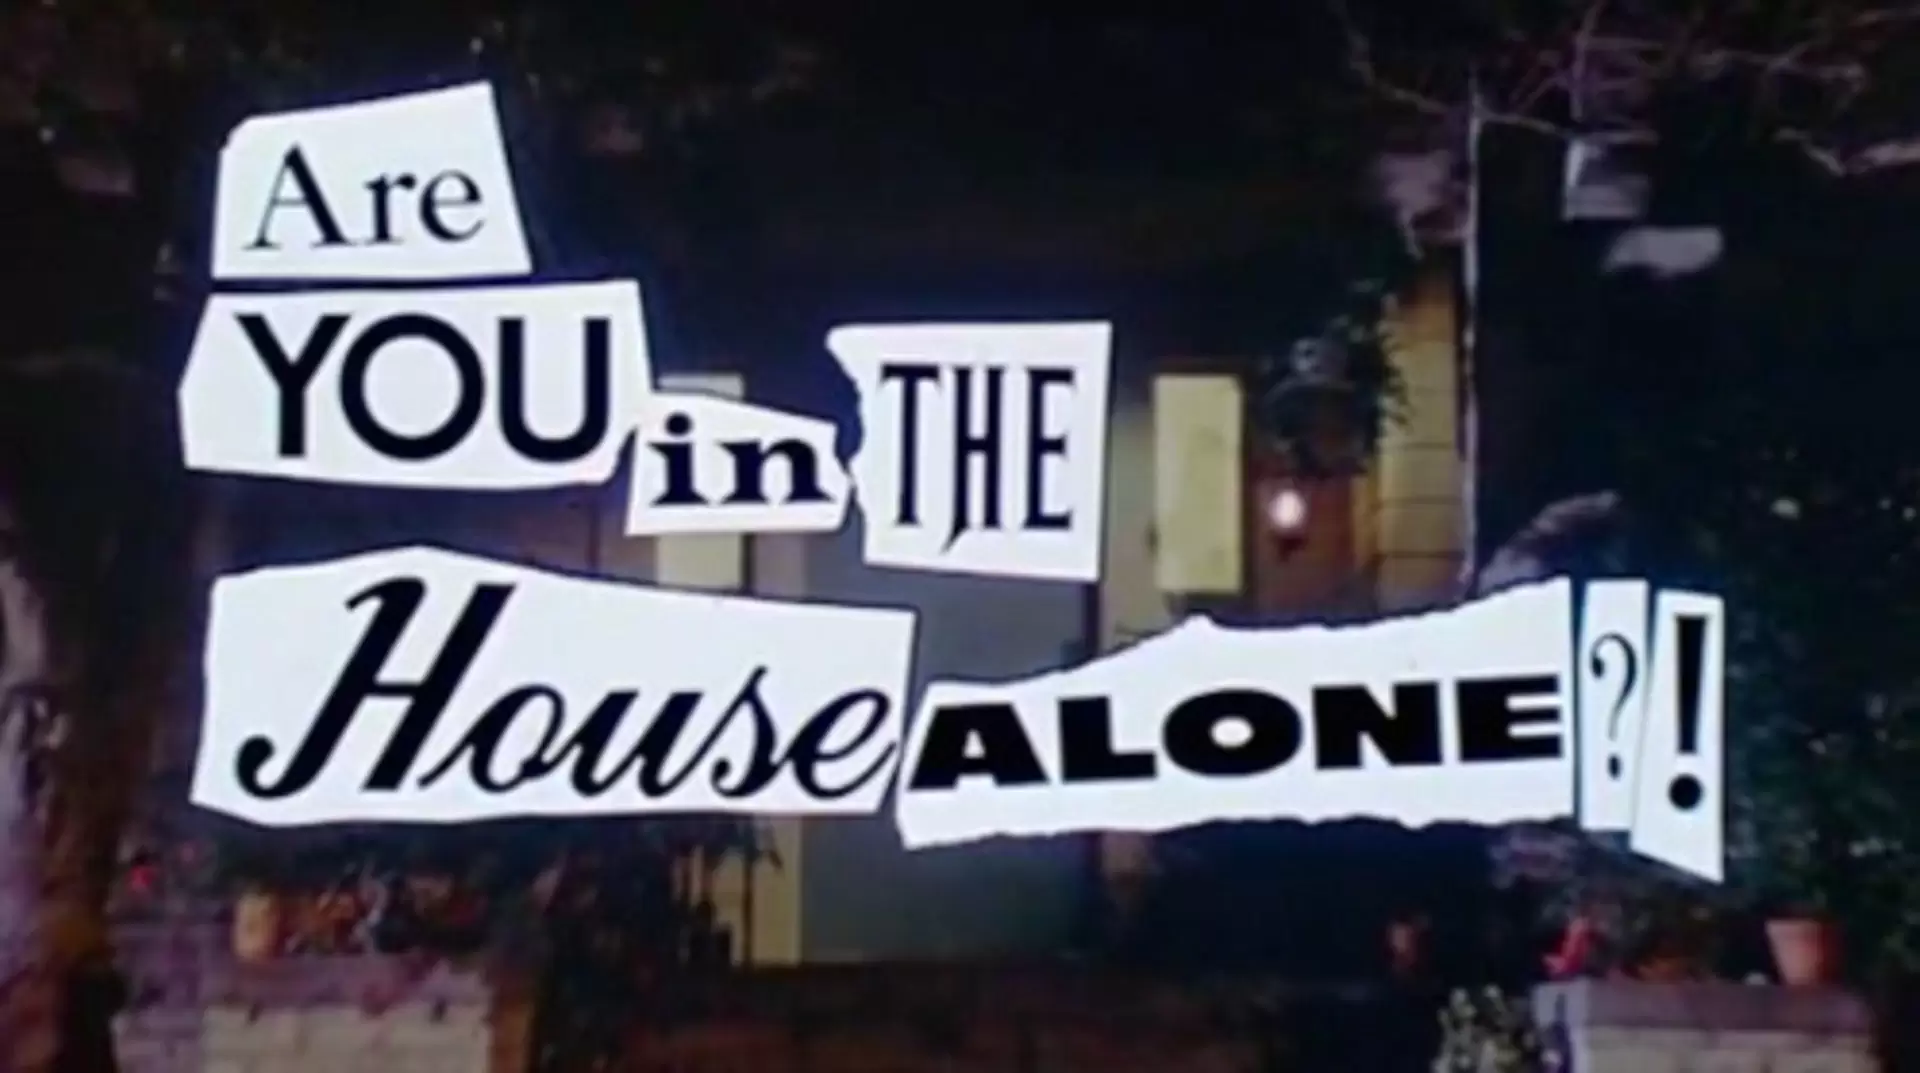 دانلود فیلم Are You in the House Alone? 1978 (آیا شما تنها در مجلس هستید؟)